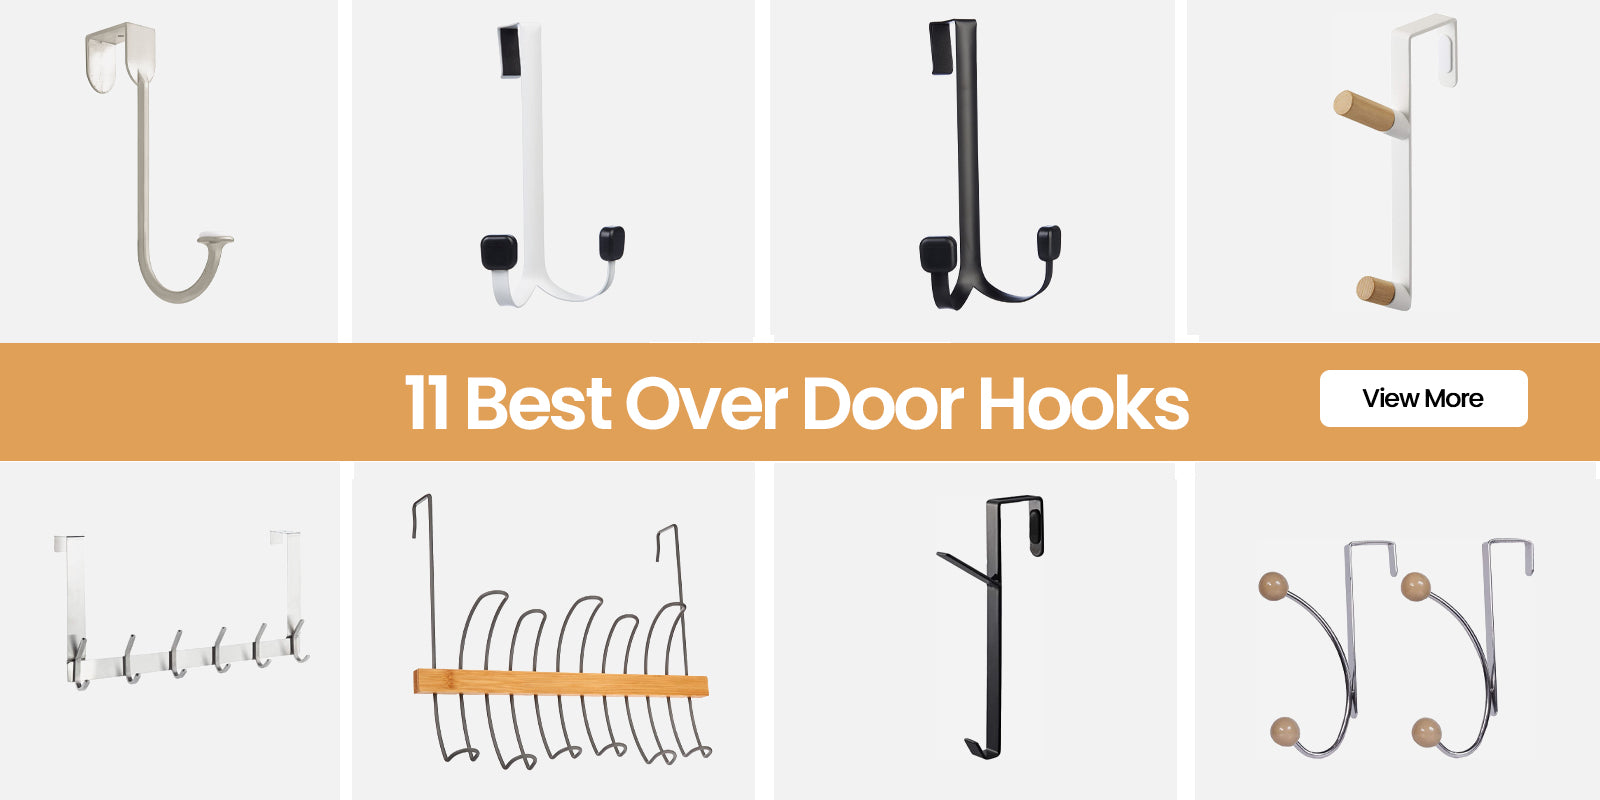 10 Best Over The Door Coat Hooks Review - The Jerusalem Post